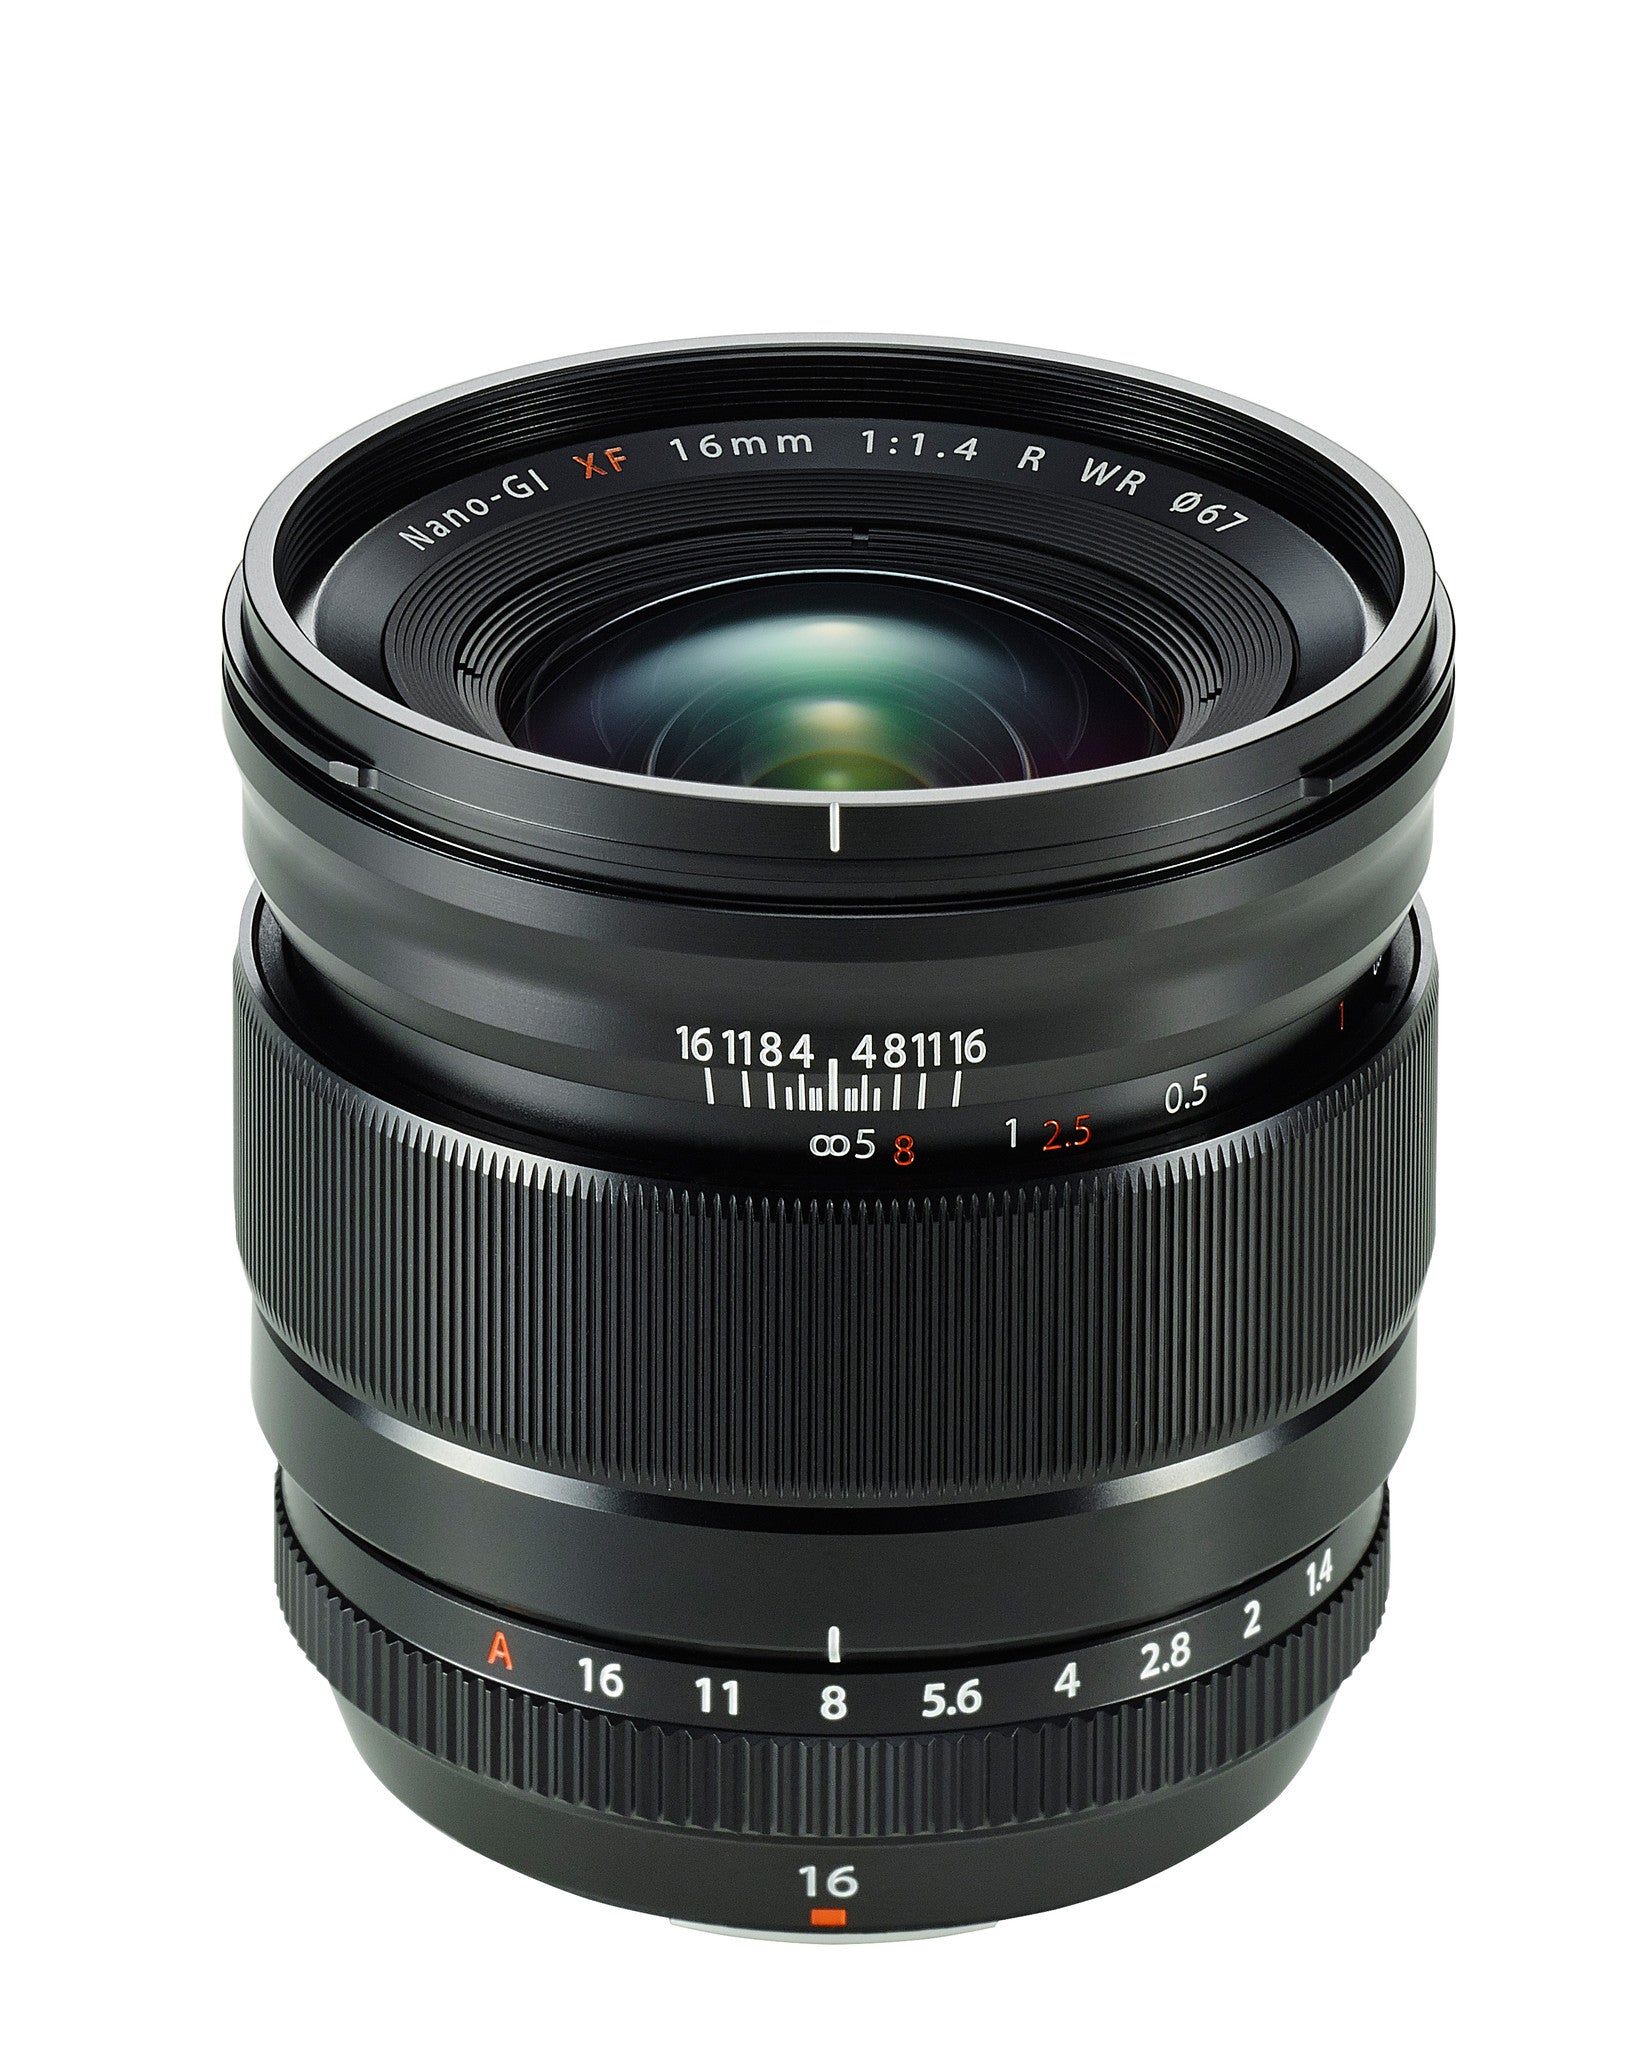 Fujifilm XF 16mm f1.4 Lens, lenses mirrorless, Fujifilm - Pictureline  - 1